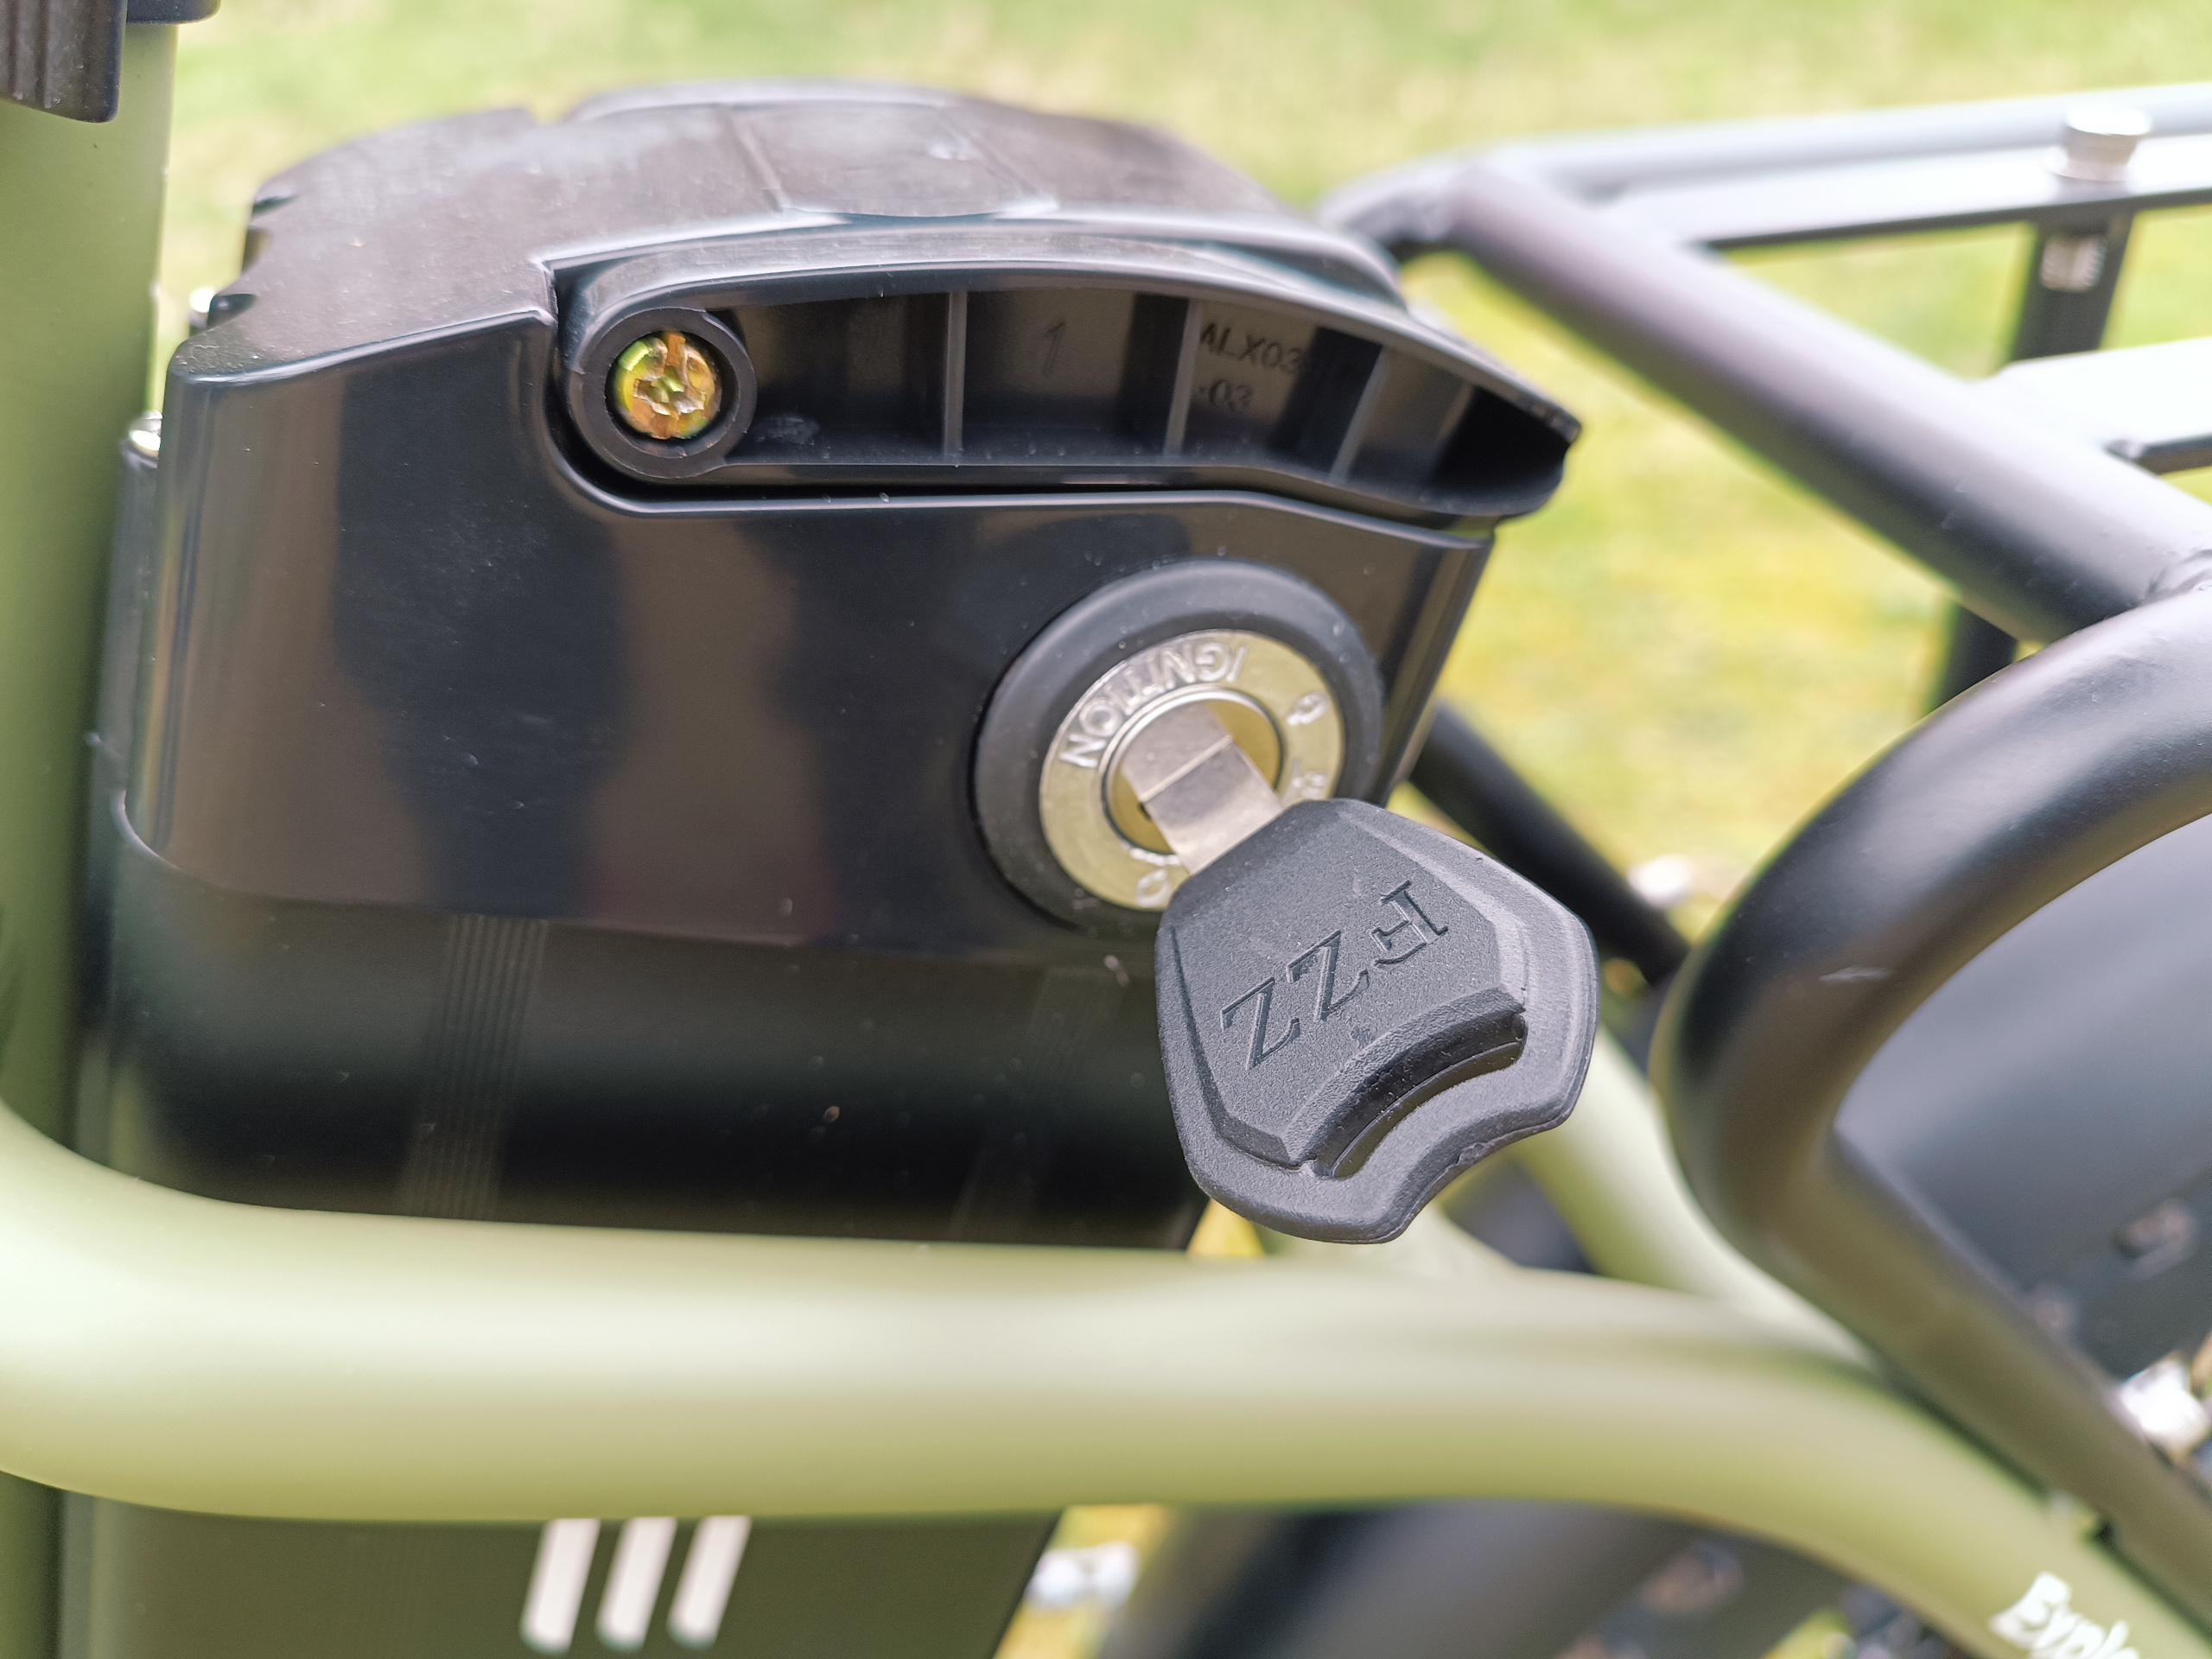 Das E-Bike kann nur mit Schlüssel gestartet werden | Quelle: ebiketester24.de